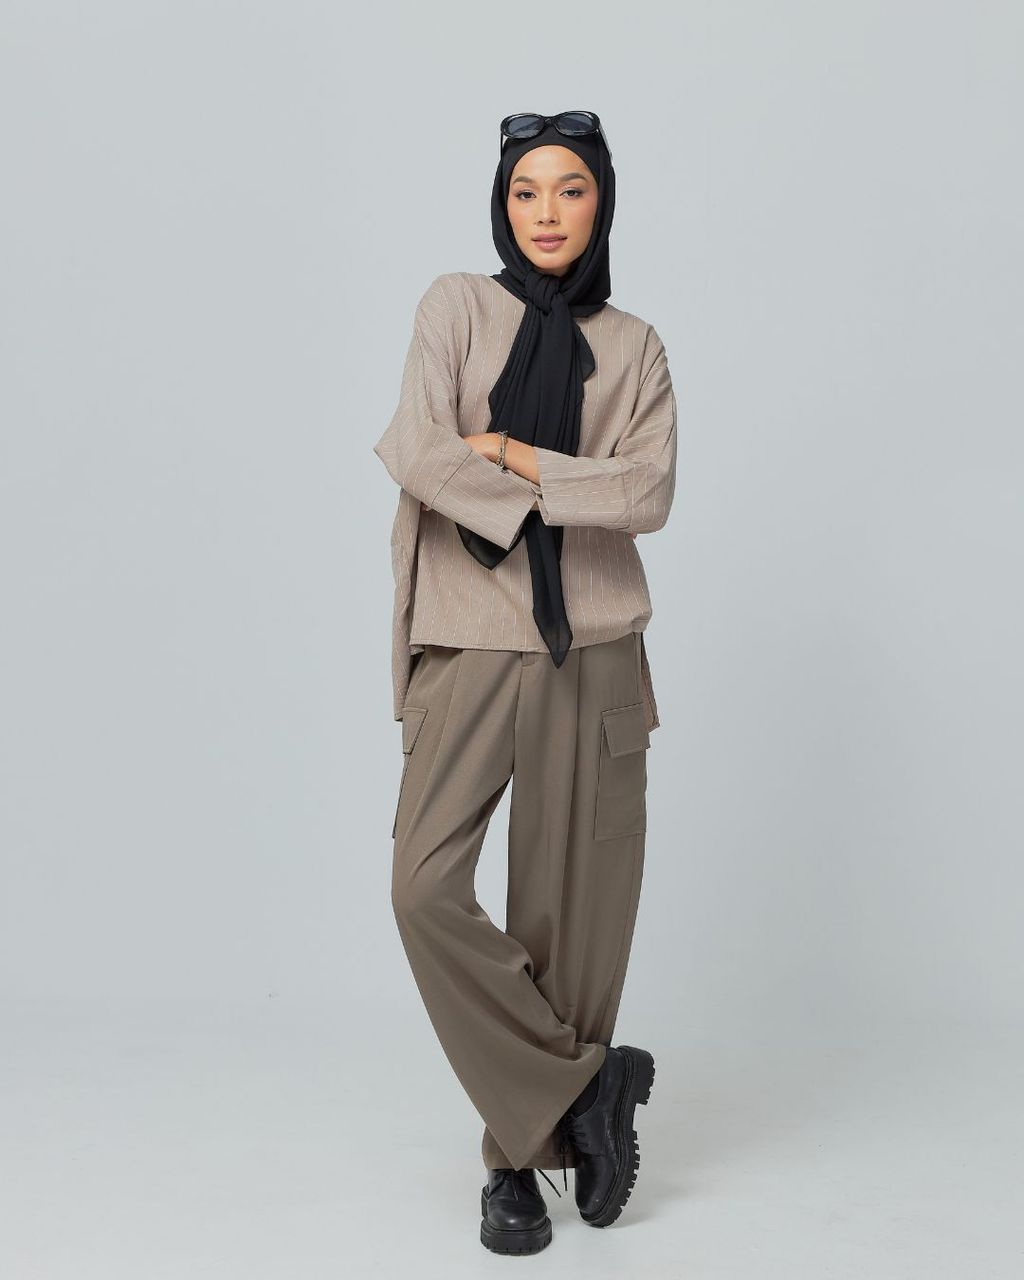 haura-wear-demi-blouse-lengan panjang-kemeja labuh-baju labuh-tunic-kaftan-midi-dress-blouse-shirt-long-sleeve-baju-muslimah-baju-perempuan-shirt-blouse-baju (2)